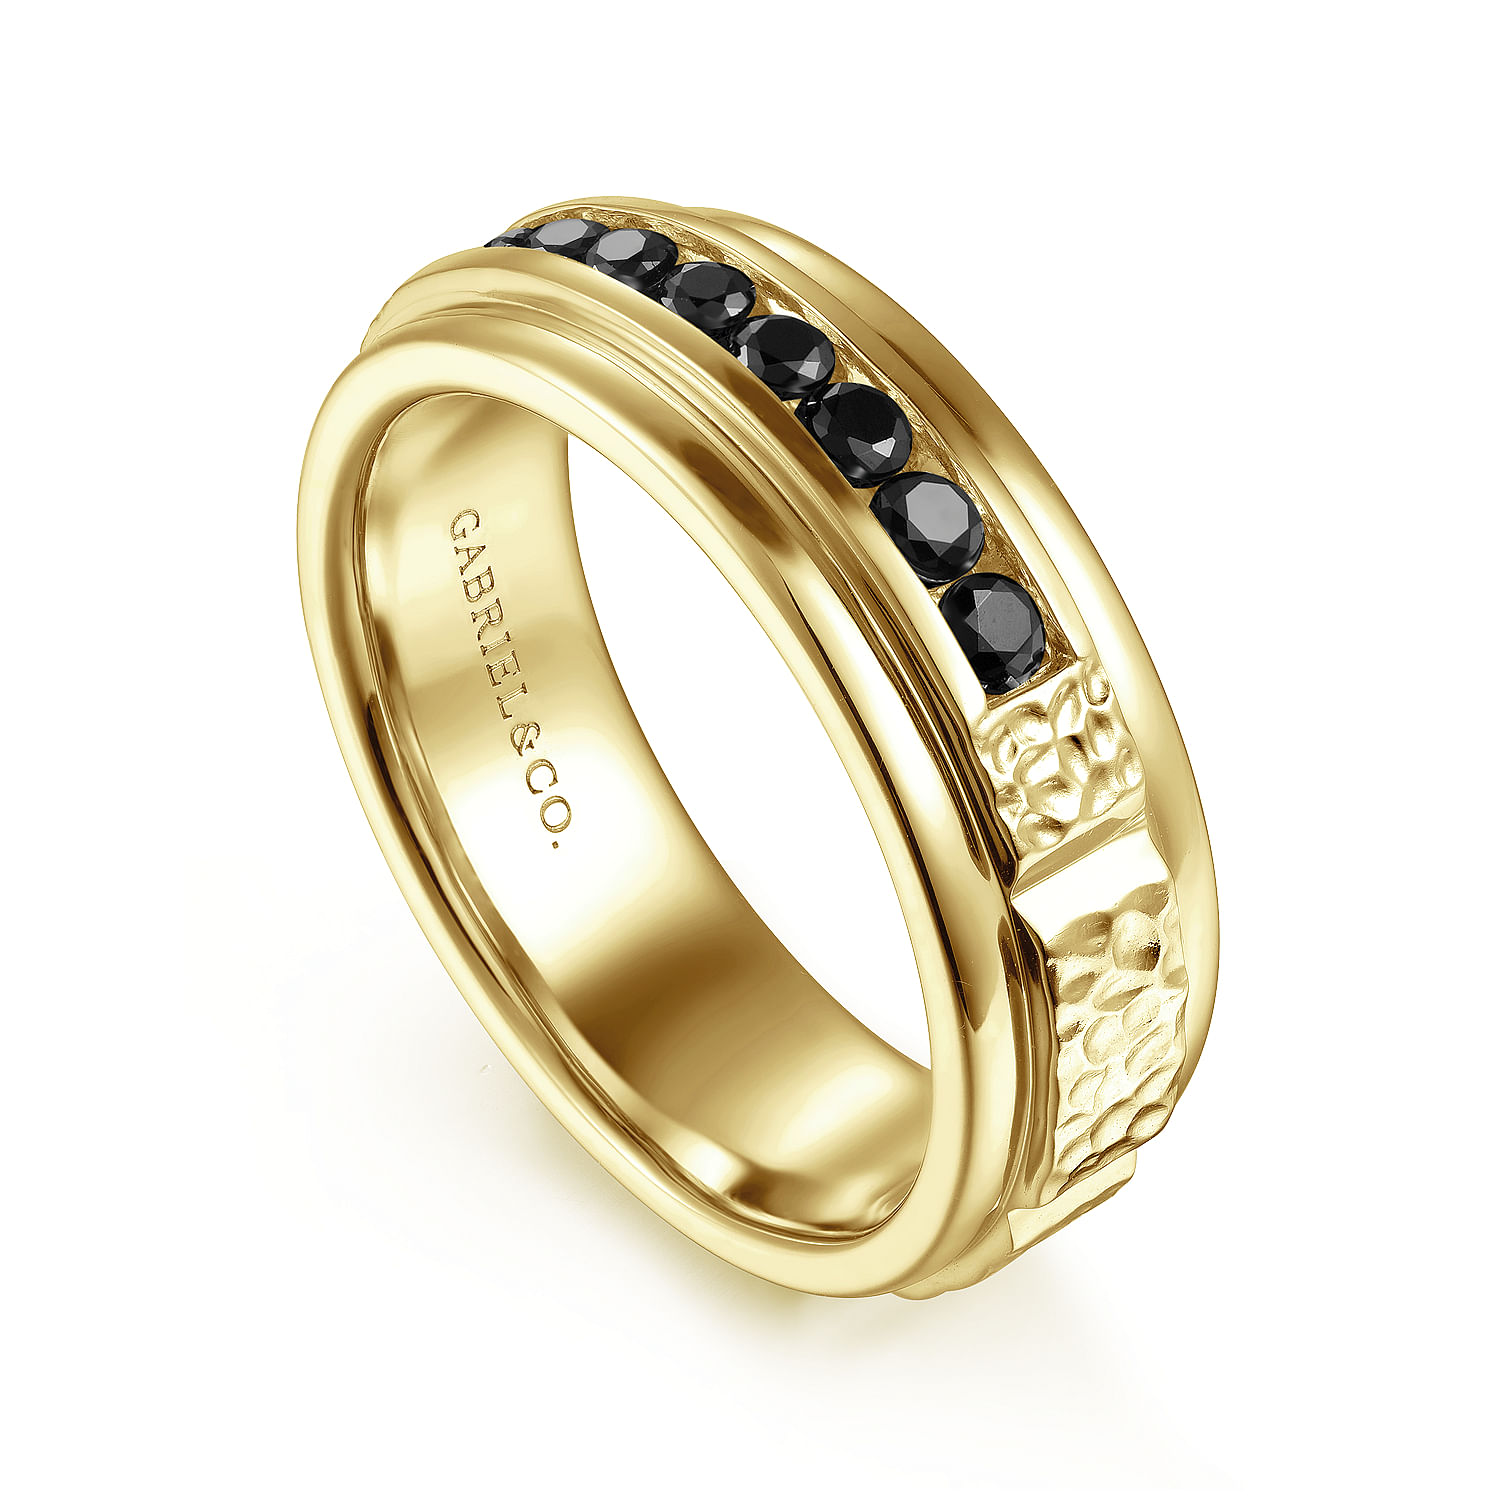 14K Yellow Gold Black Diamond Men's Wedding Ring in Sand Blast Finish